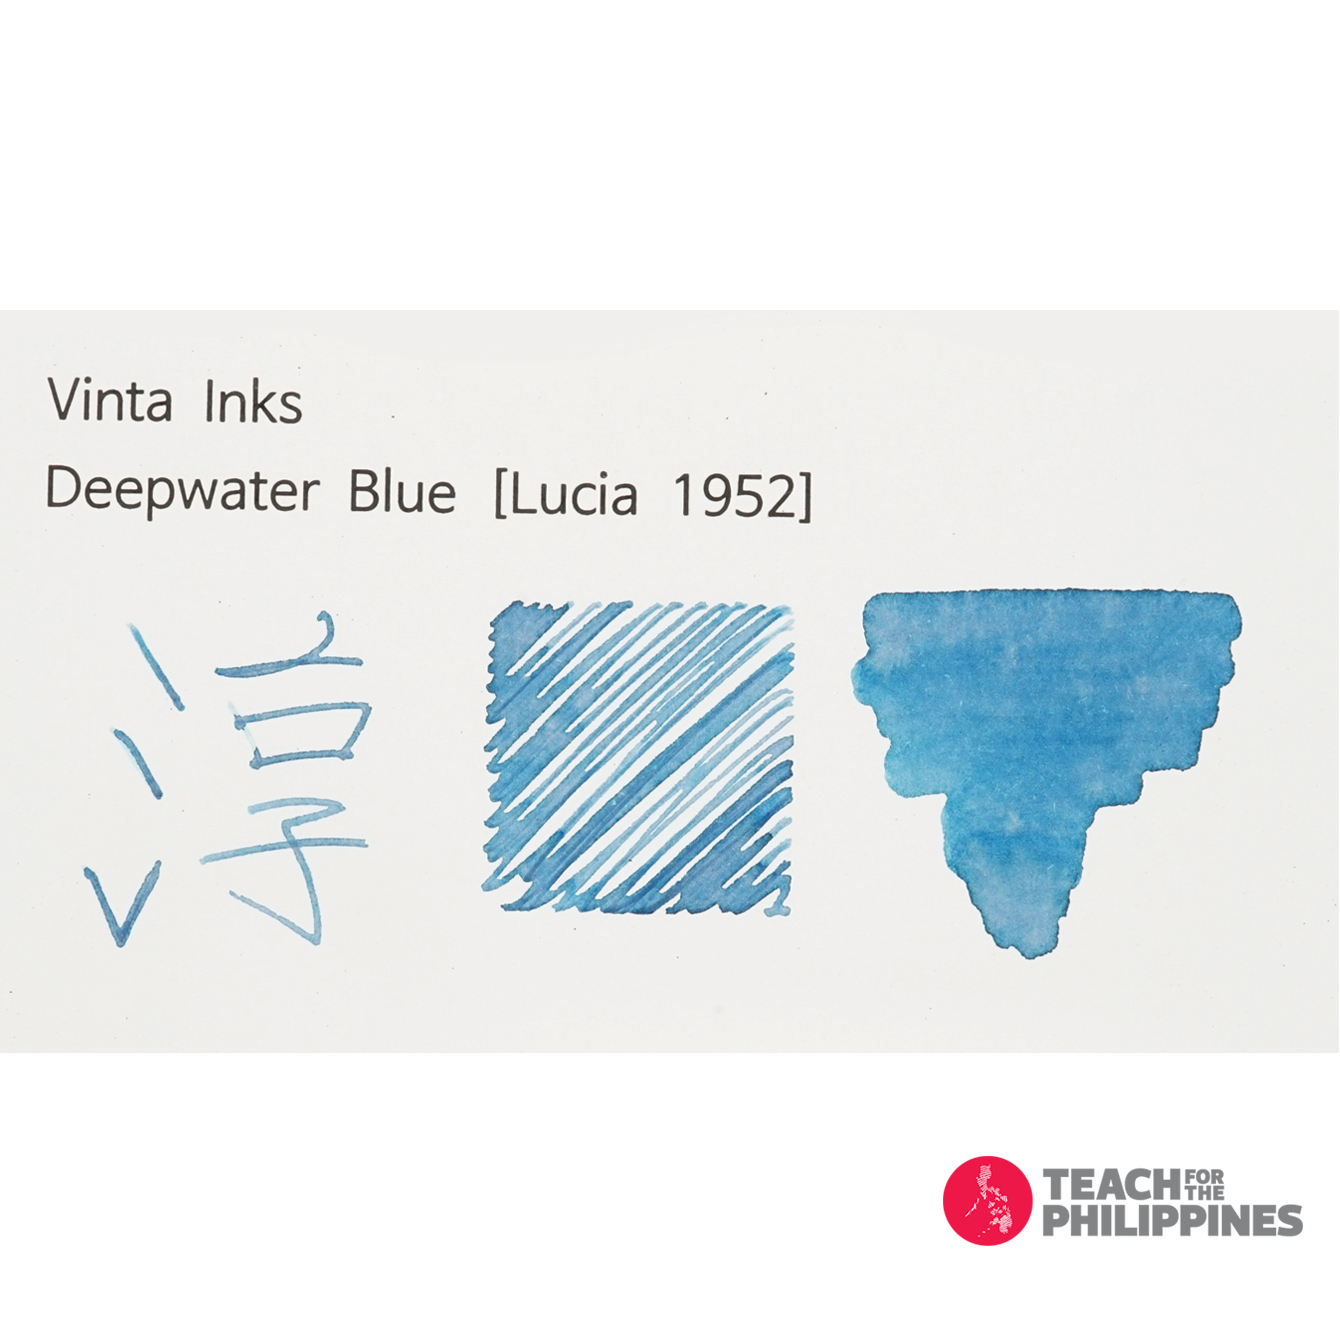 빈타 병 잉크 딥워터 블루 루시아 Deepwater Blue Lucia